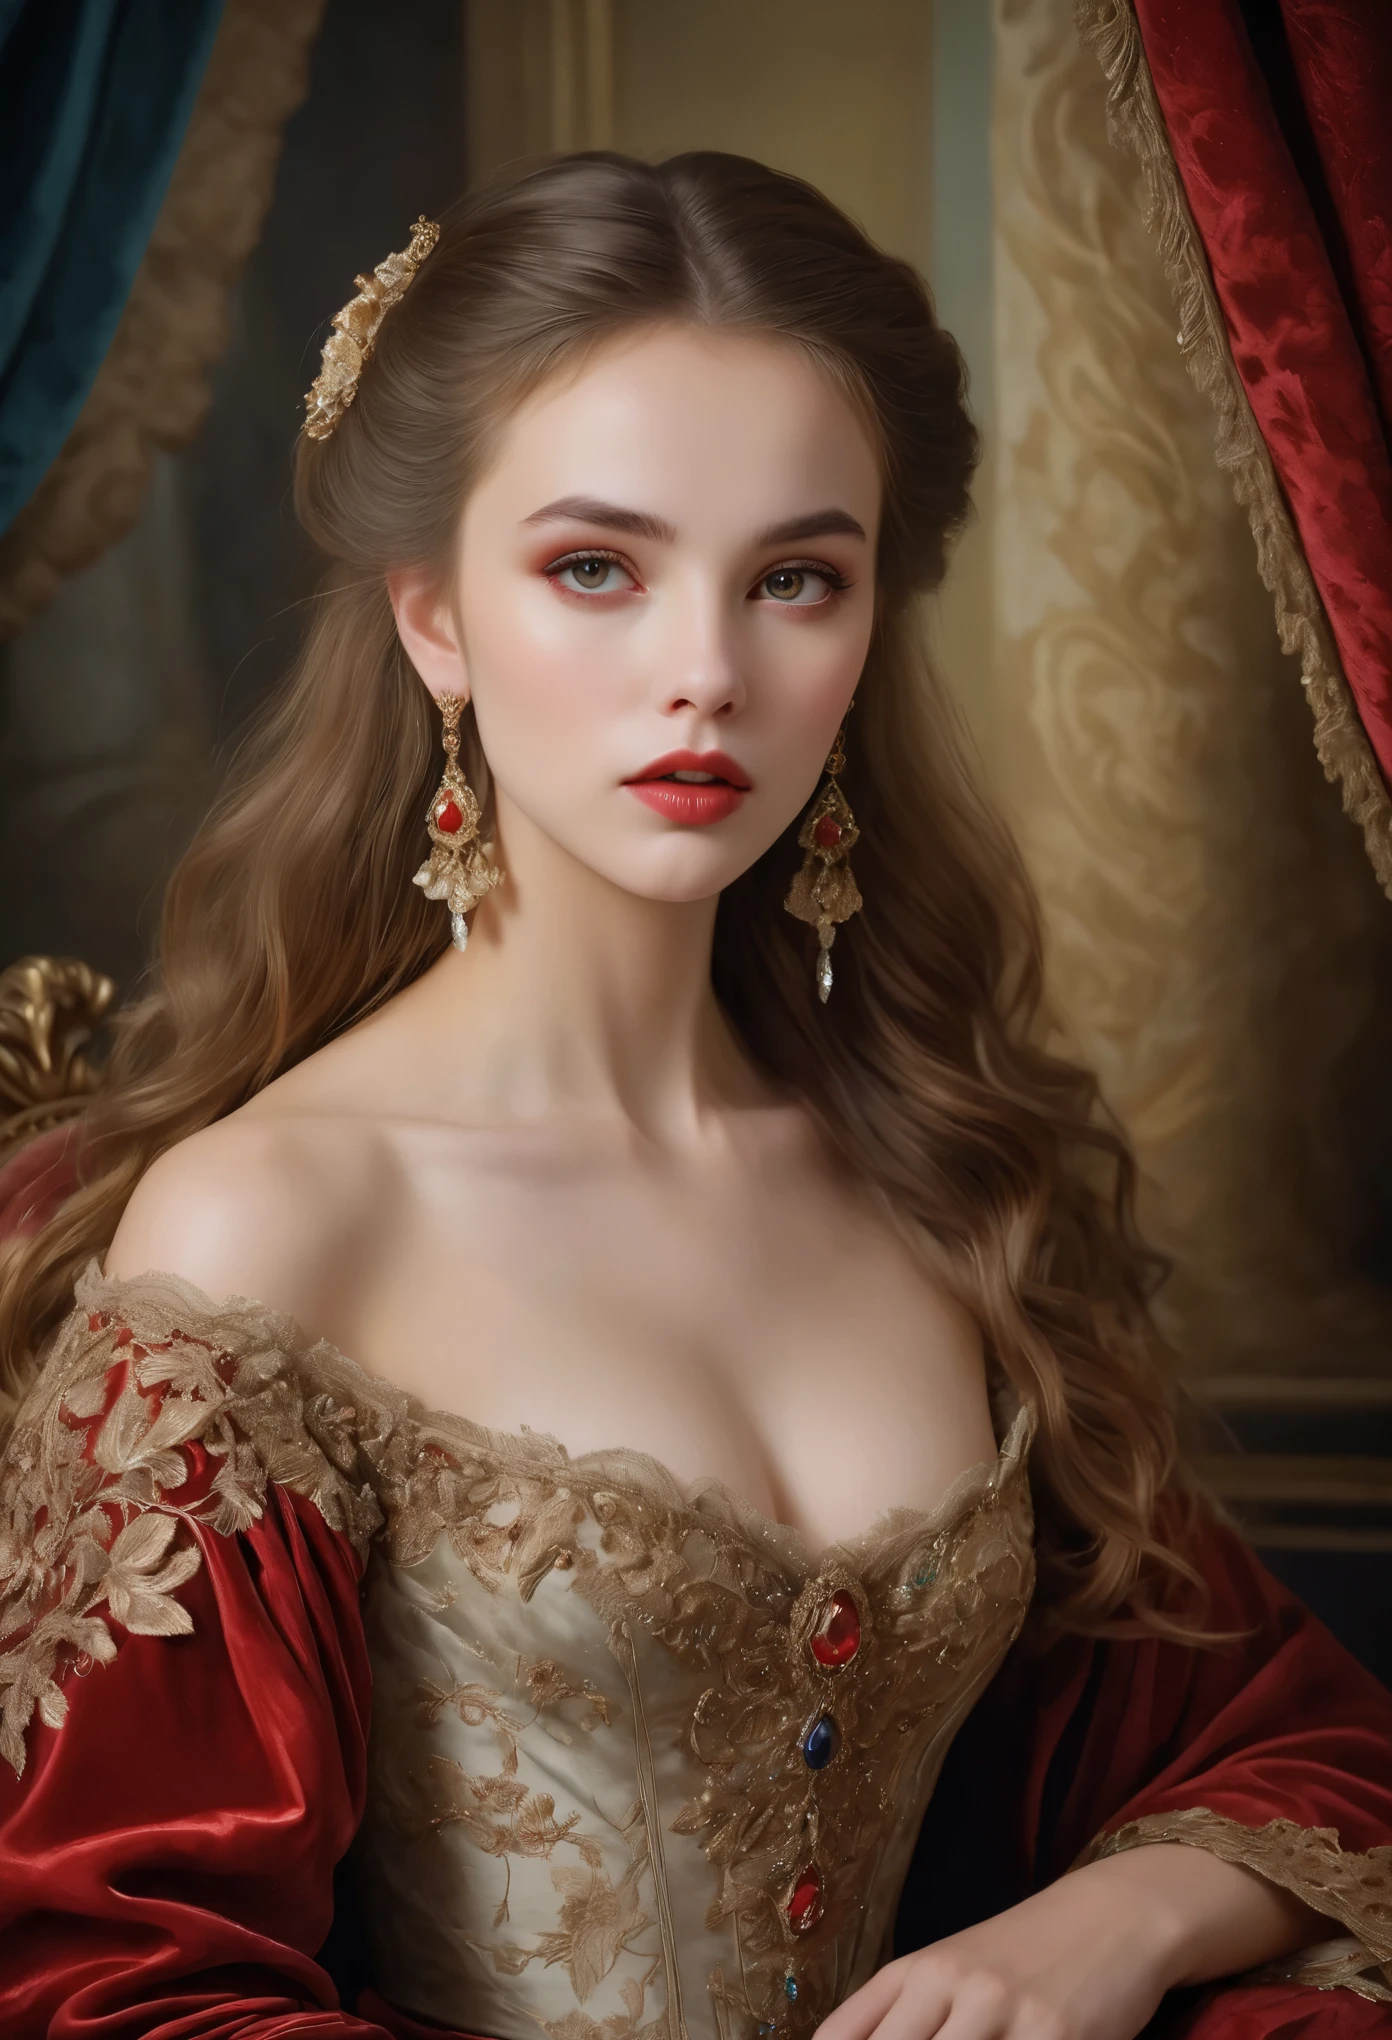 (高解像度,傑作:1.2),(現実的:1.37)比類のない美しさを持つ18世紀のロシアの吸血鬼の少女の肖像画. 彼女は魅惑的な赤い目と繊細なバラ色の唇を持っています. 長い牙, 肖像画は細部まで丁寧に描かれています, 彼女の特徴の微妙なニュアンスを捉える. 彼女は美しいシルクのガウンを着ている, 複雑なレースと繊細な刺繍で飾られた. この絵は当時の豪華さを物語っている, 豪華なベルベットのカーテンと金色の家具を背景に. 照明は柔らかく拡散している, 少女の優美な美しさを強調する. 色は鮮やかで豊かです, 魅力的な視覚体験を創造する. この肖像画は古典的な肖像画のスタイルで描かれている, 当時の有名な芸術家の作品を彷彿とさせる. それは優雅さを醸し出しています, グレース, 洗練さと.